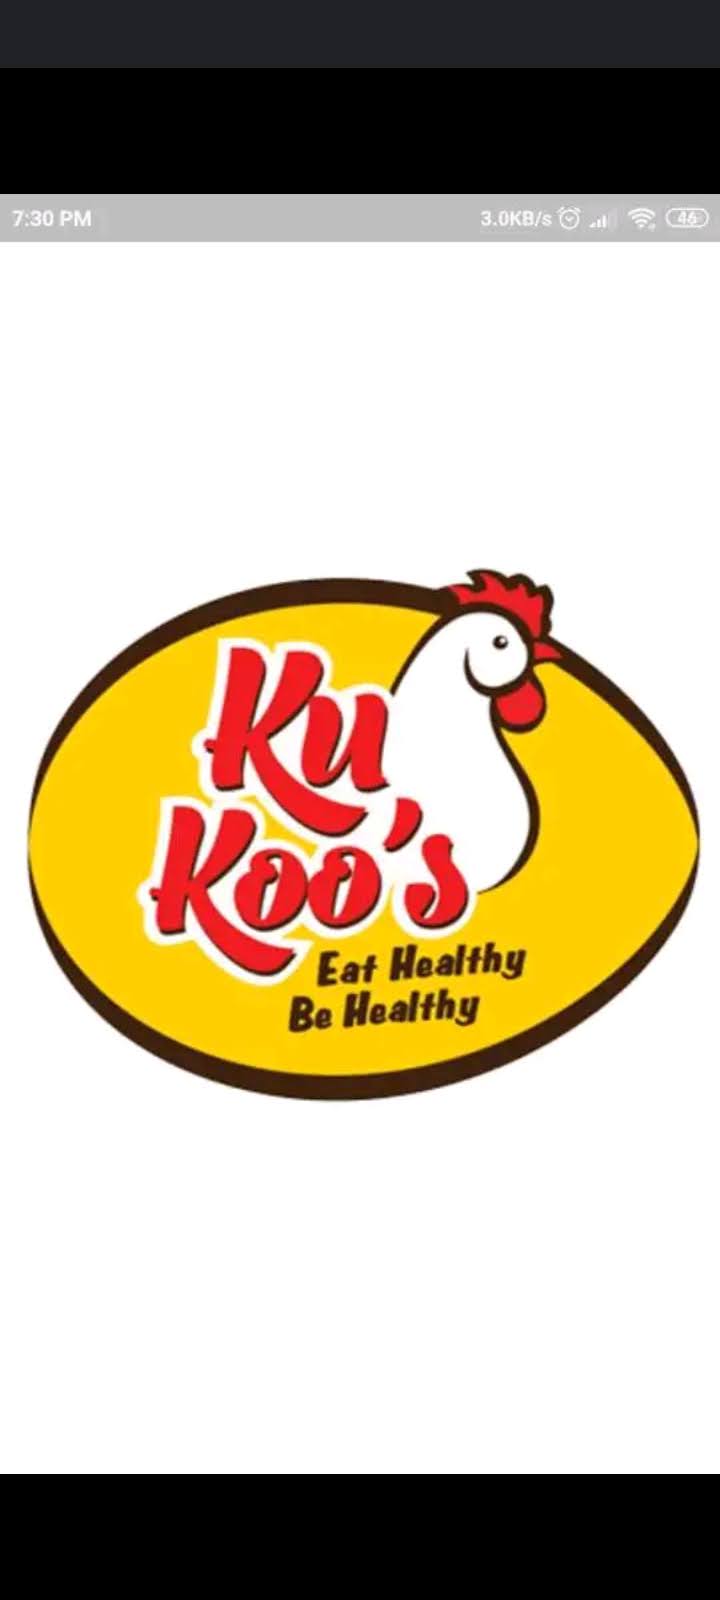 KuKooChKu Online Chicken